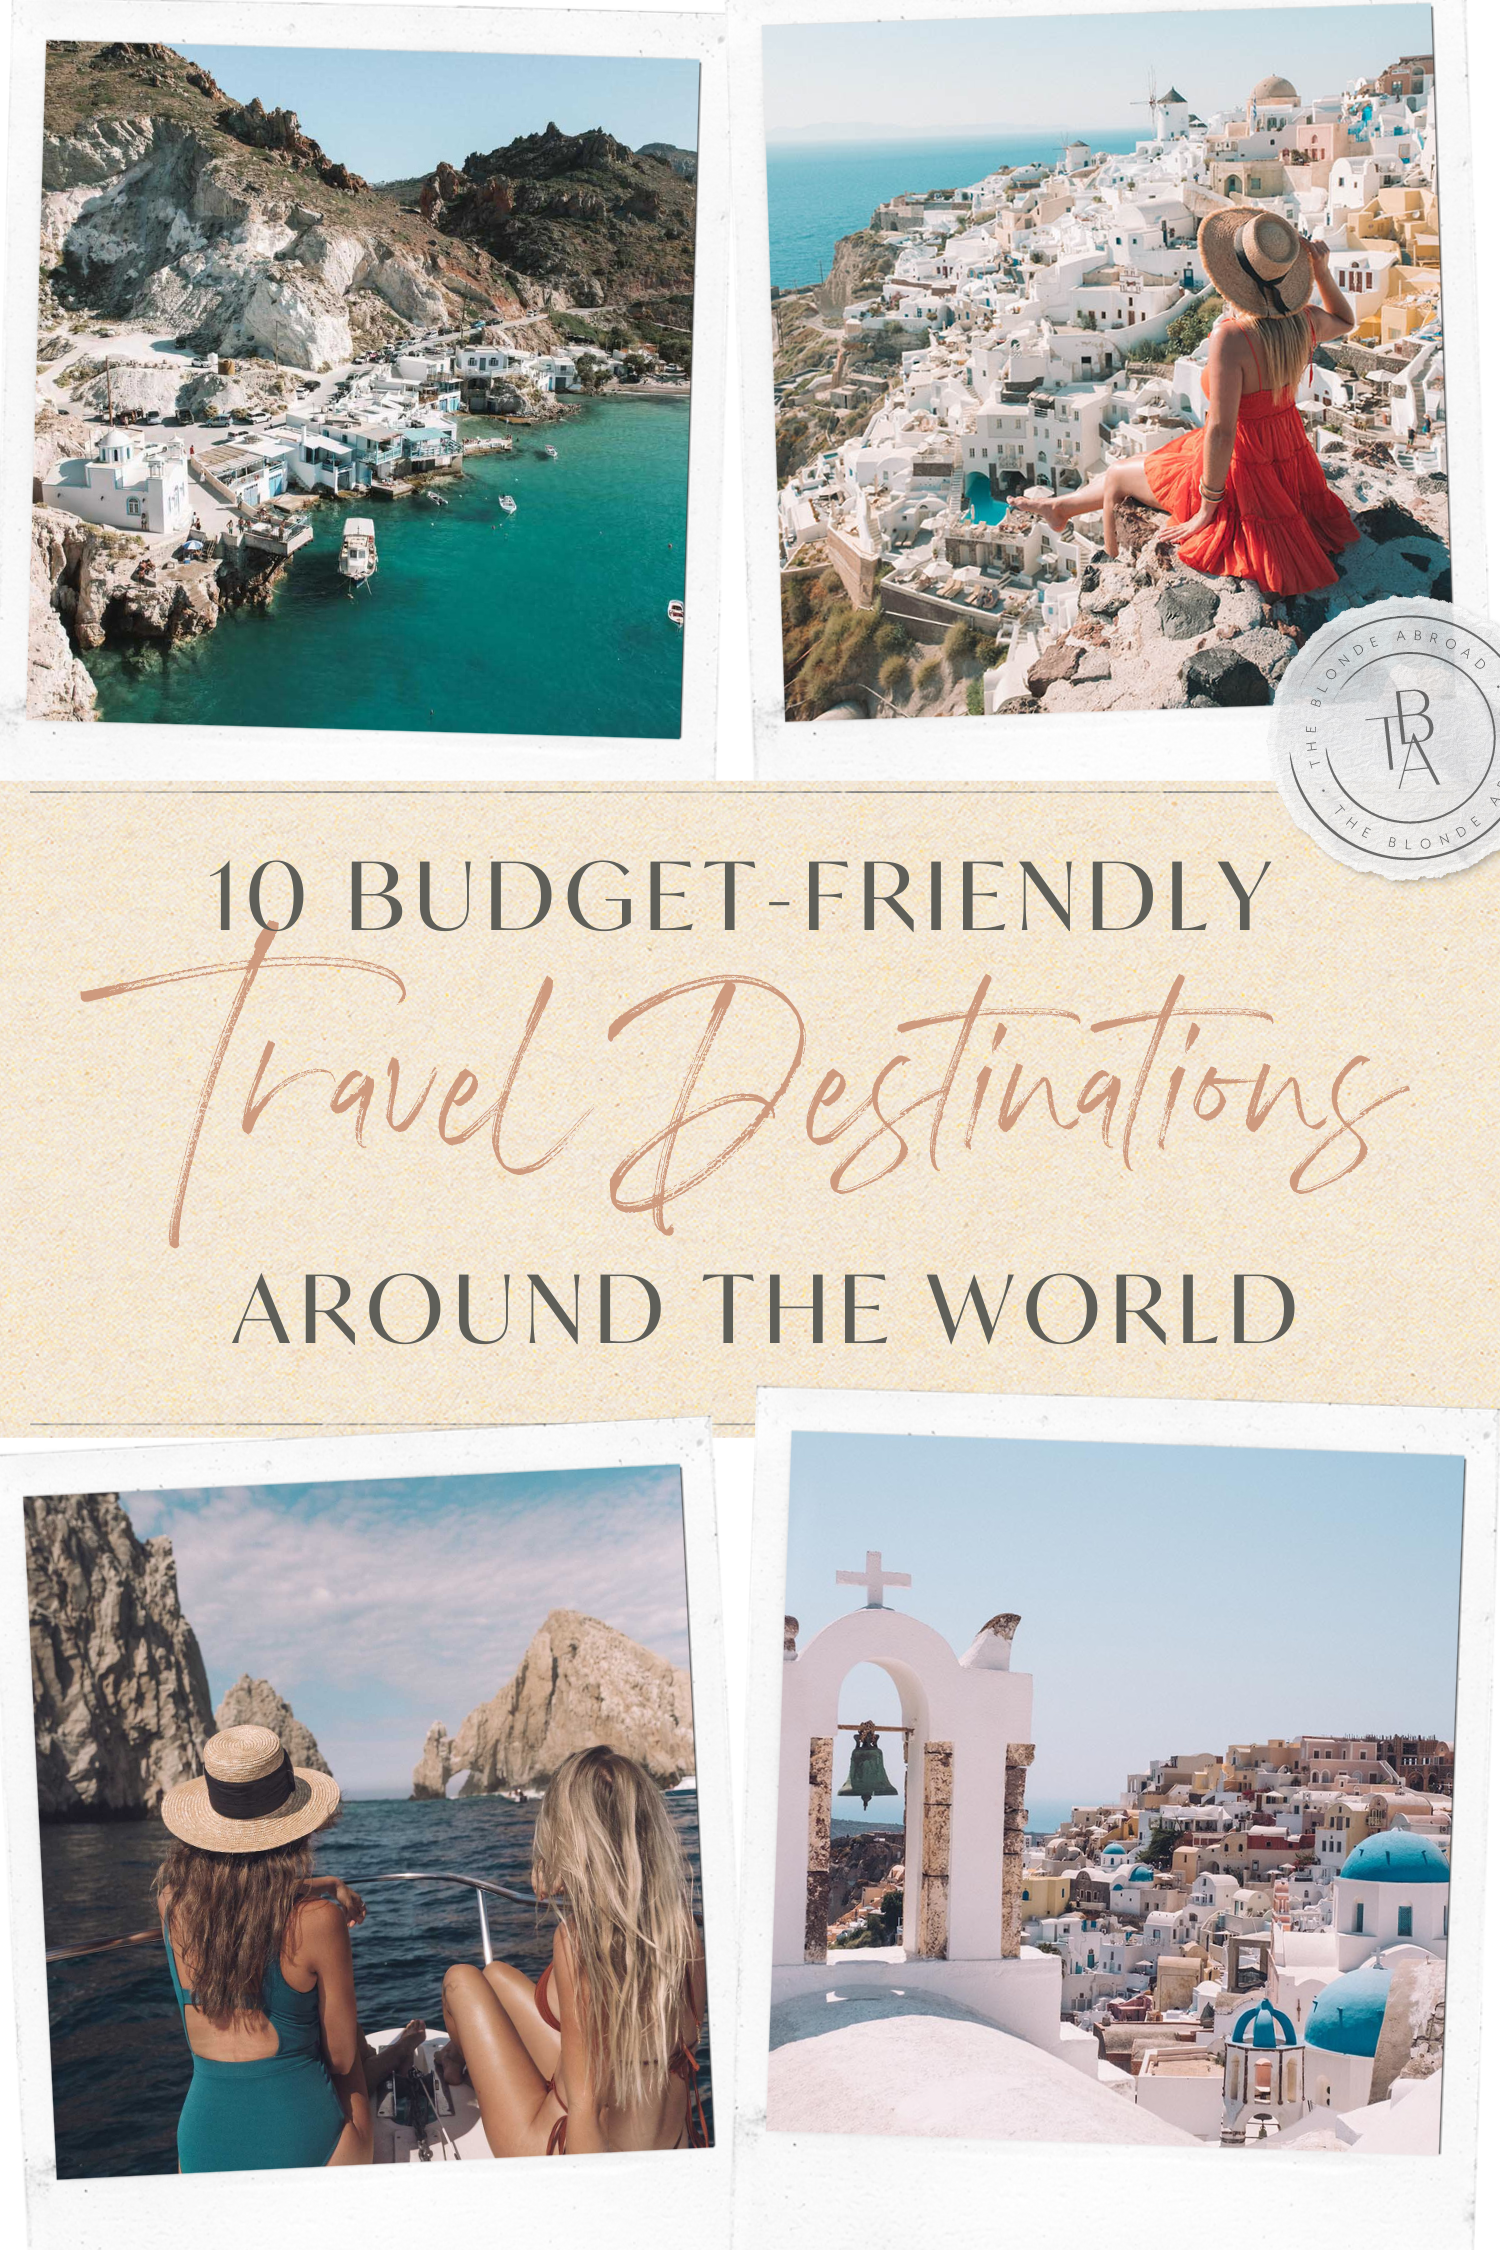 10 Budget-Friendly Travel Destinations Around the World